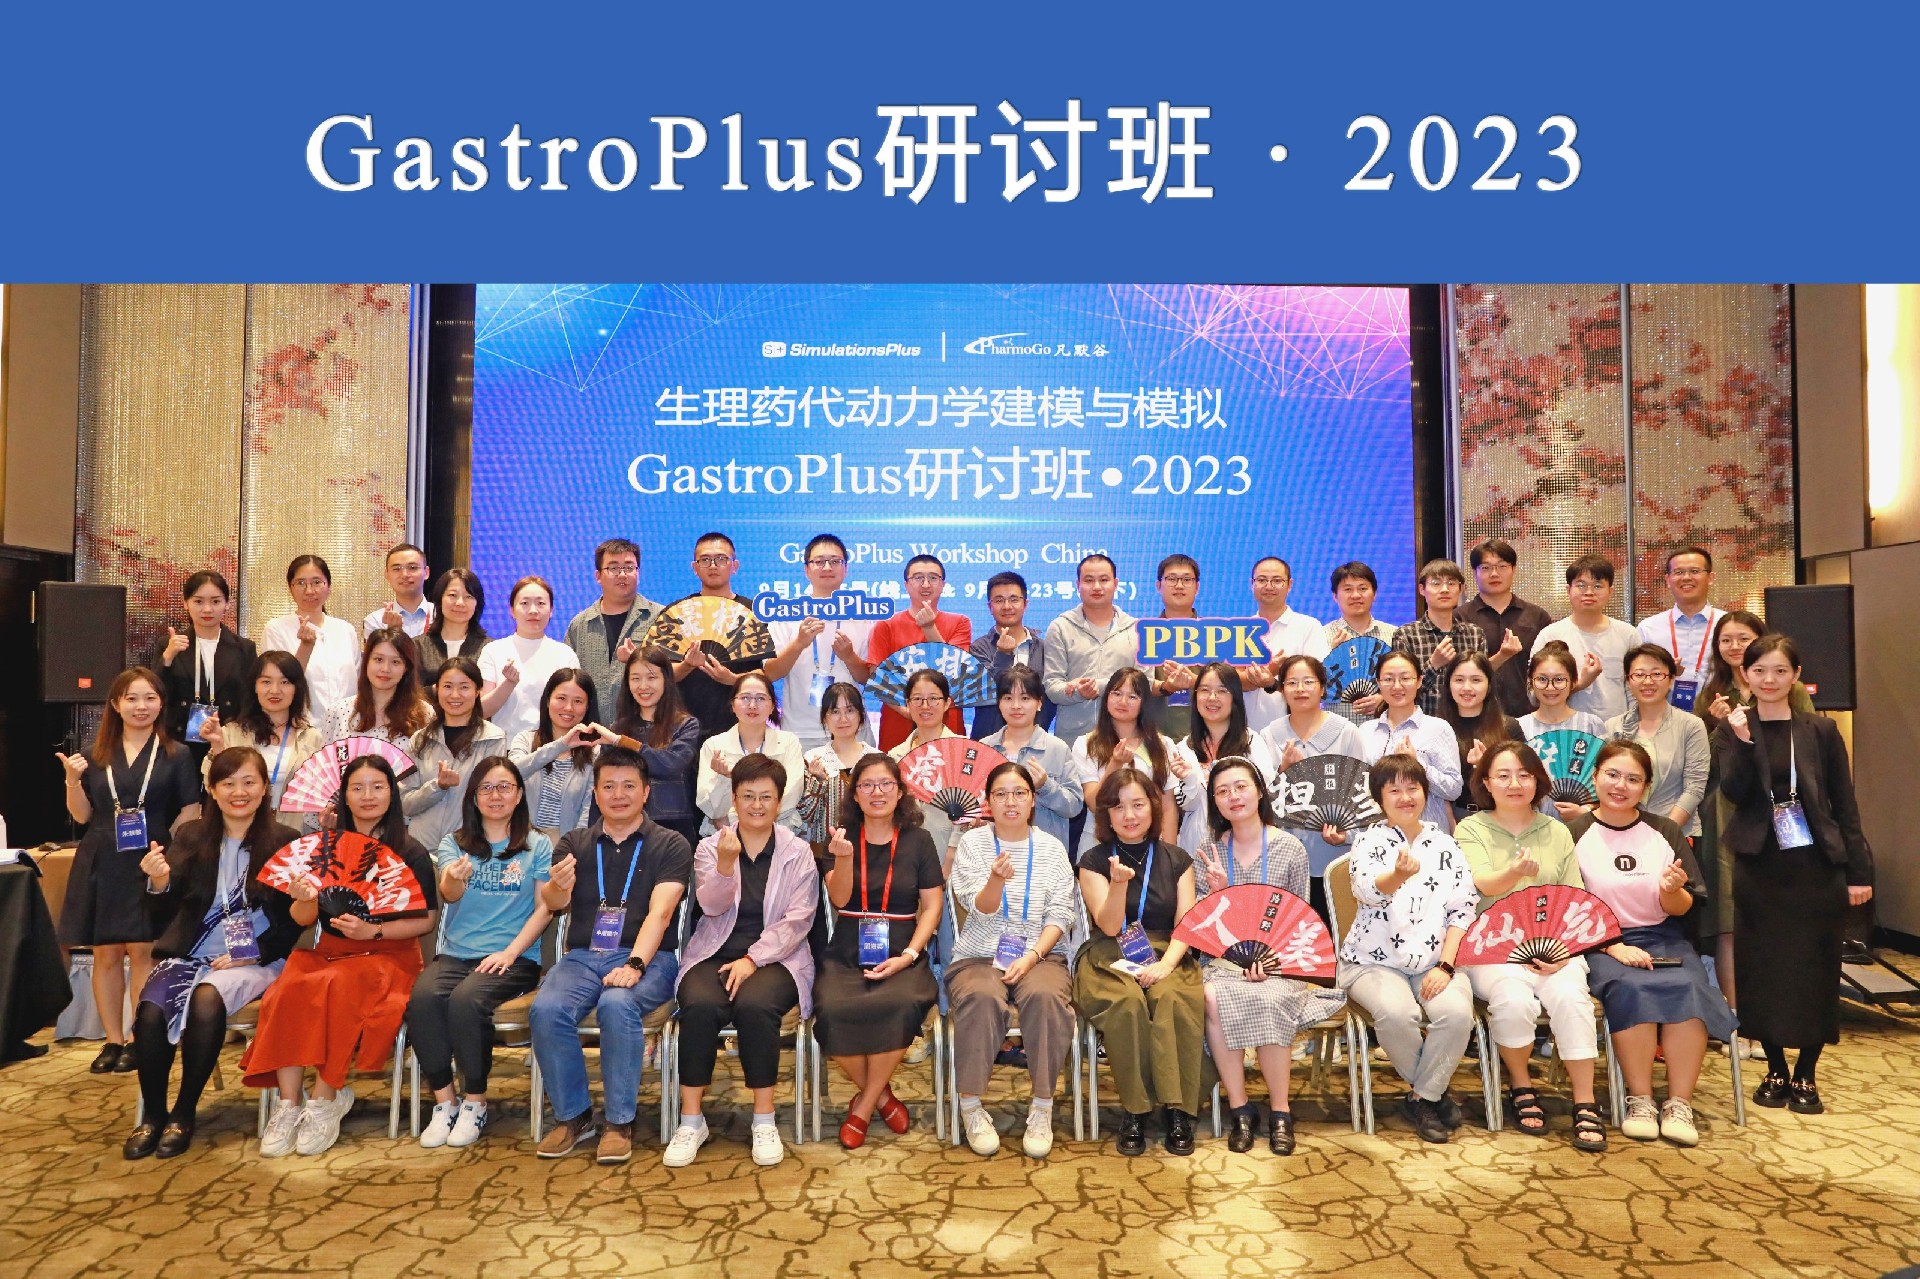 现场 | 2023年 中国GastroPlus研讨班